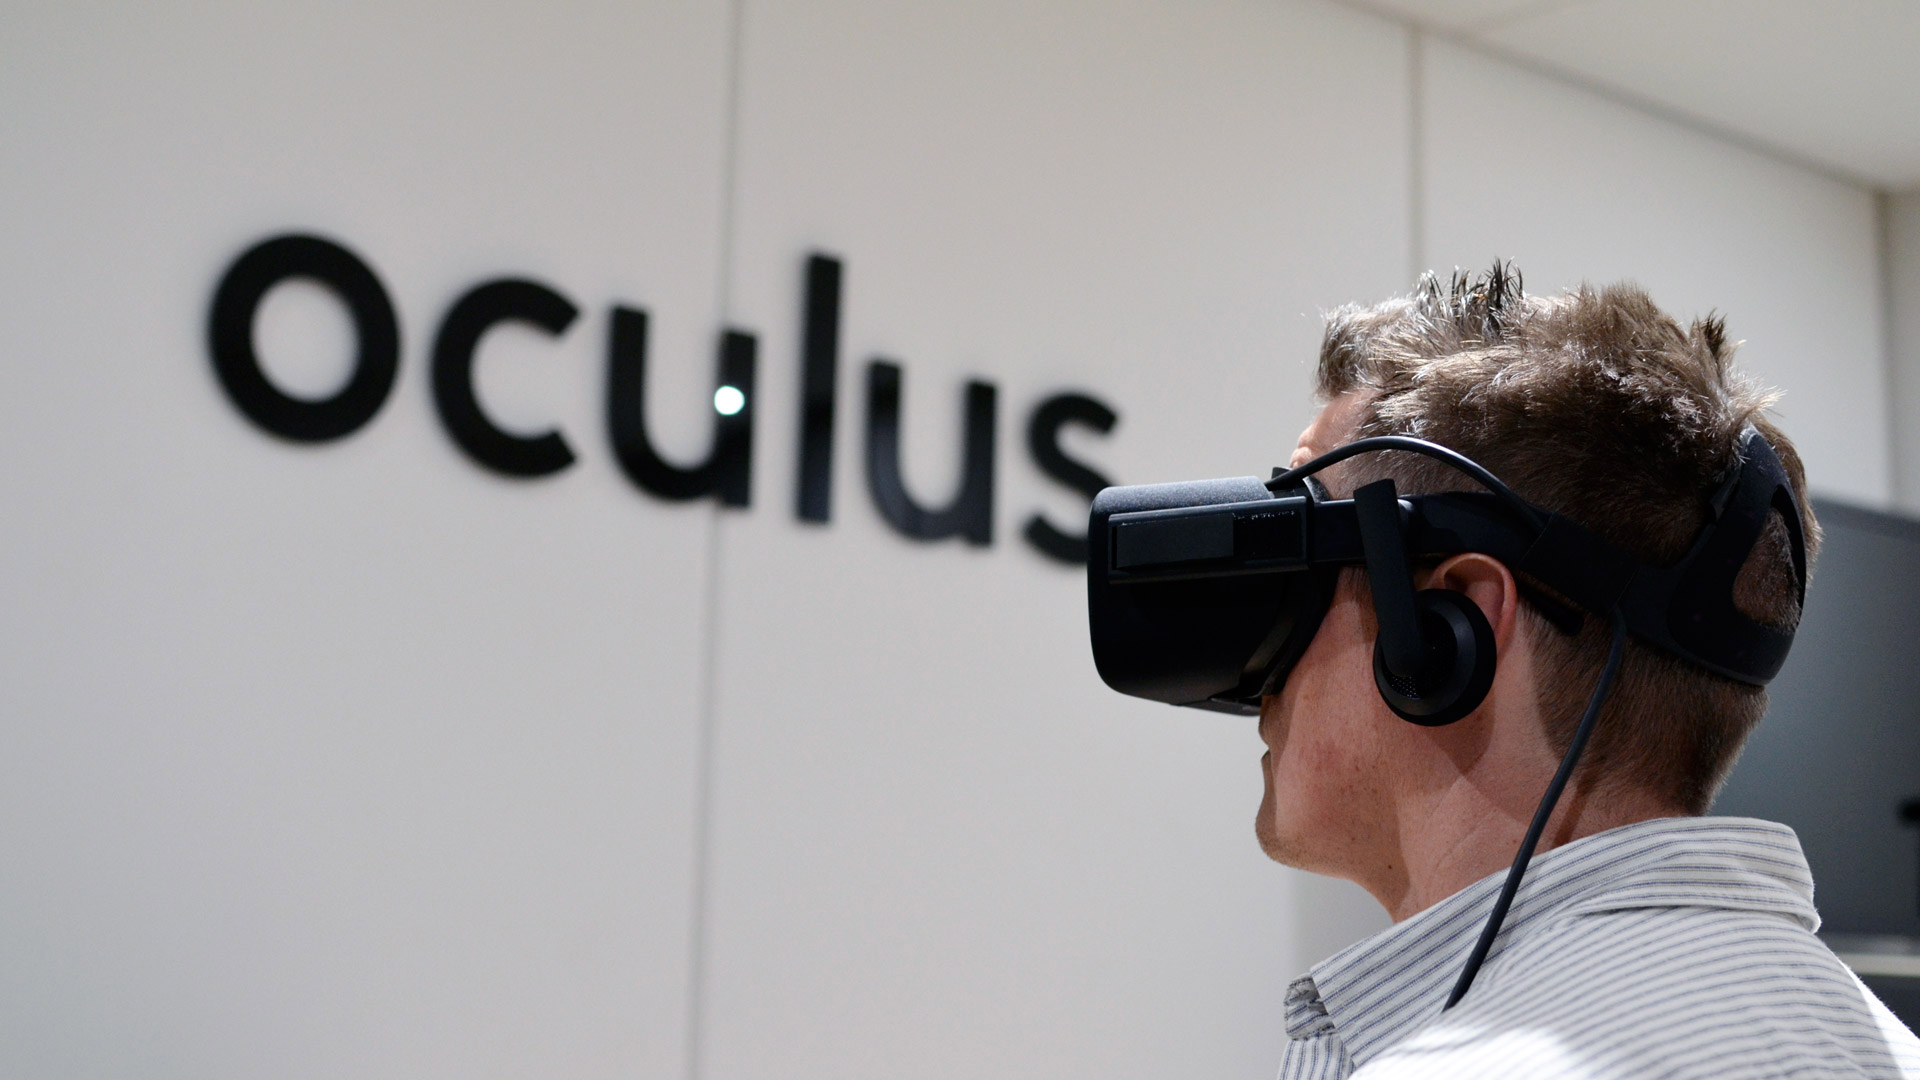 Where Can I Get A Oculus Rift